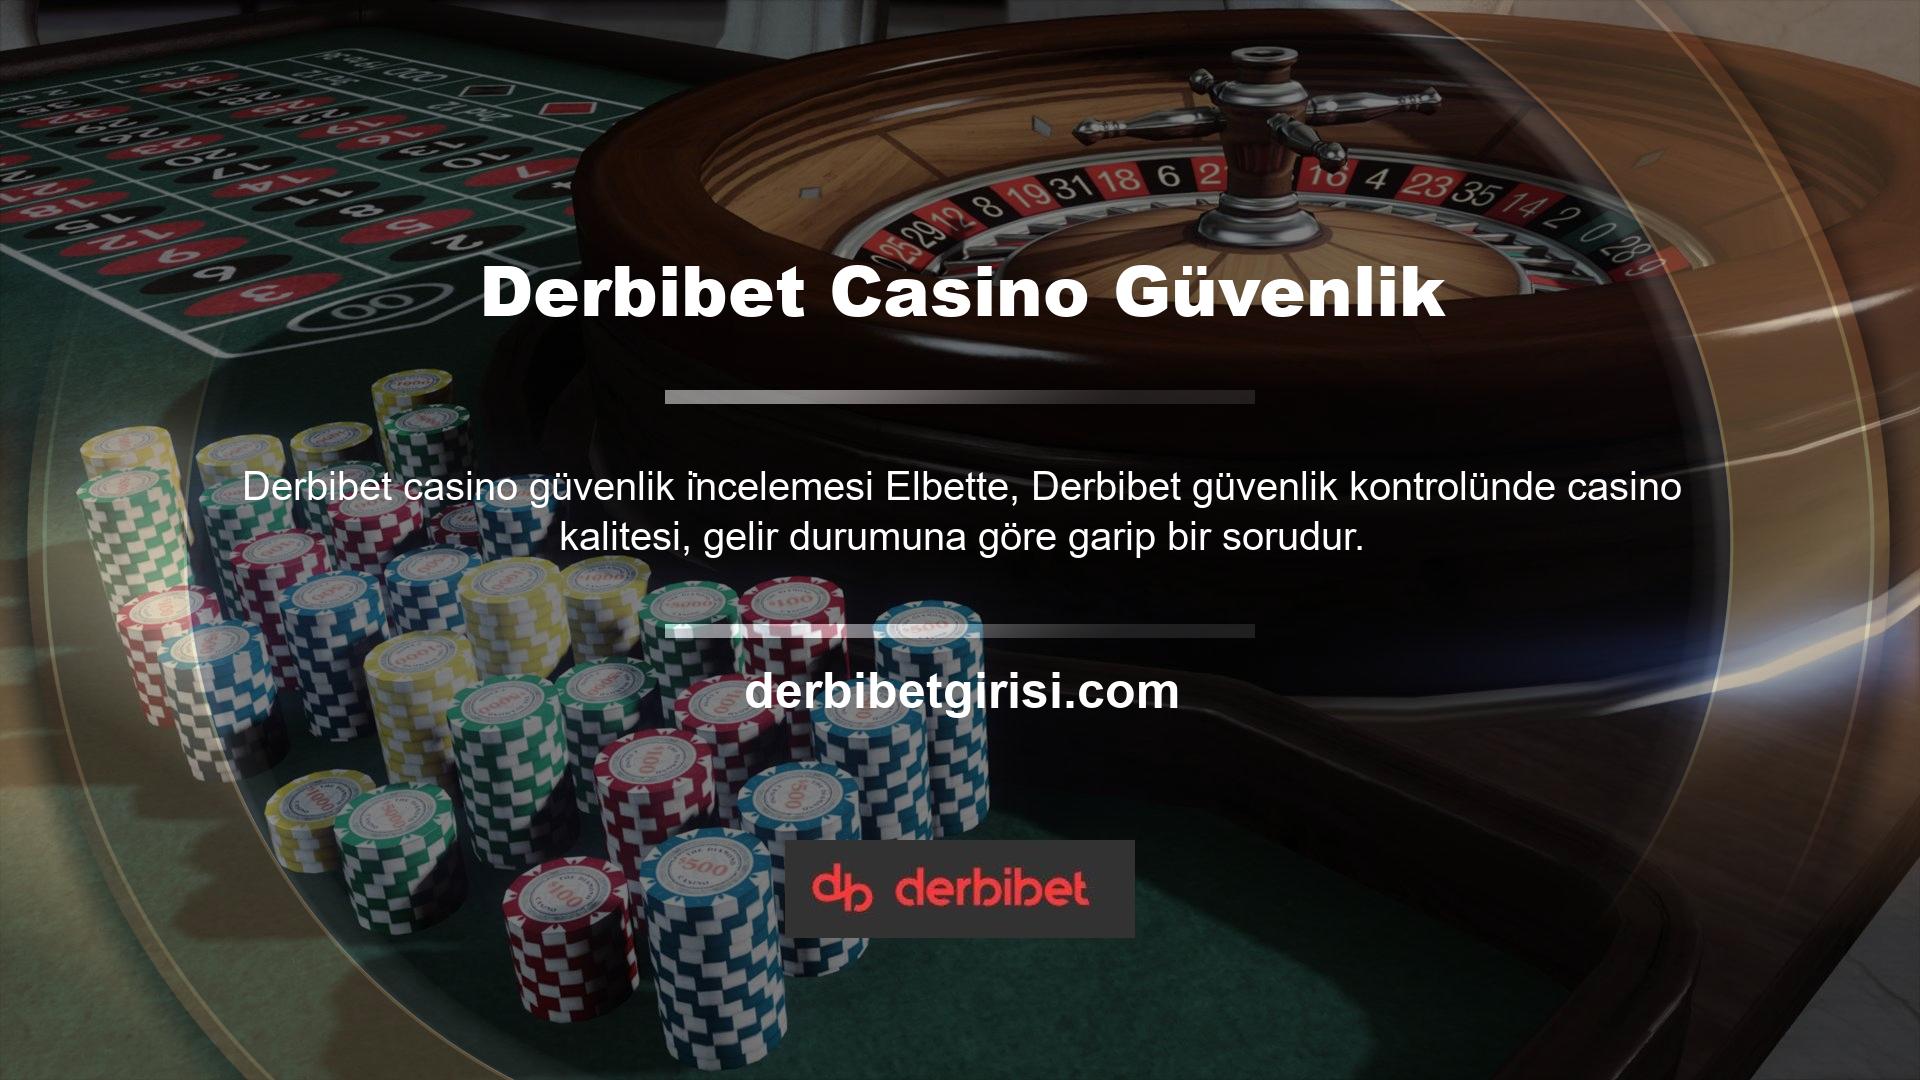 Ayrıca casino oyunlarının Derbibet Casino Güvenlik  altyapı sağlayıcılar da oldukça kaliteli isimlerdir bu nedenle bu casino oyunları sitede donmaz